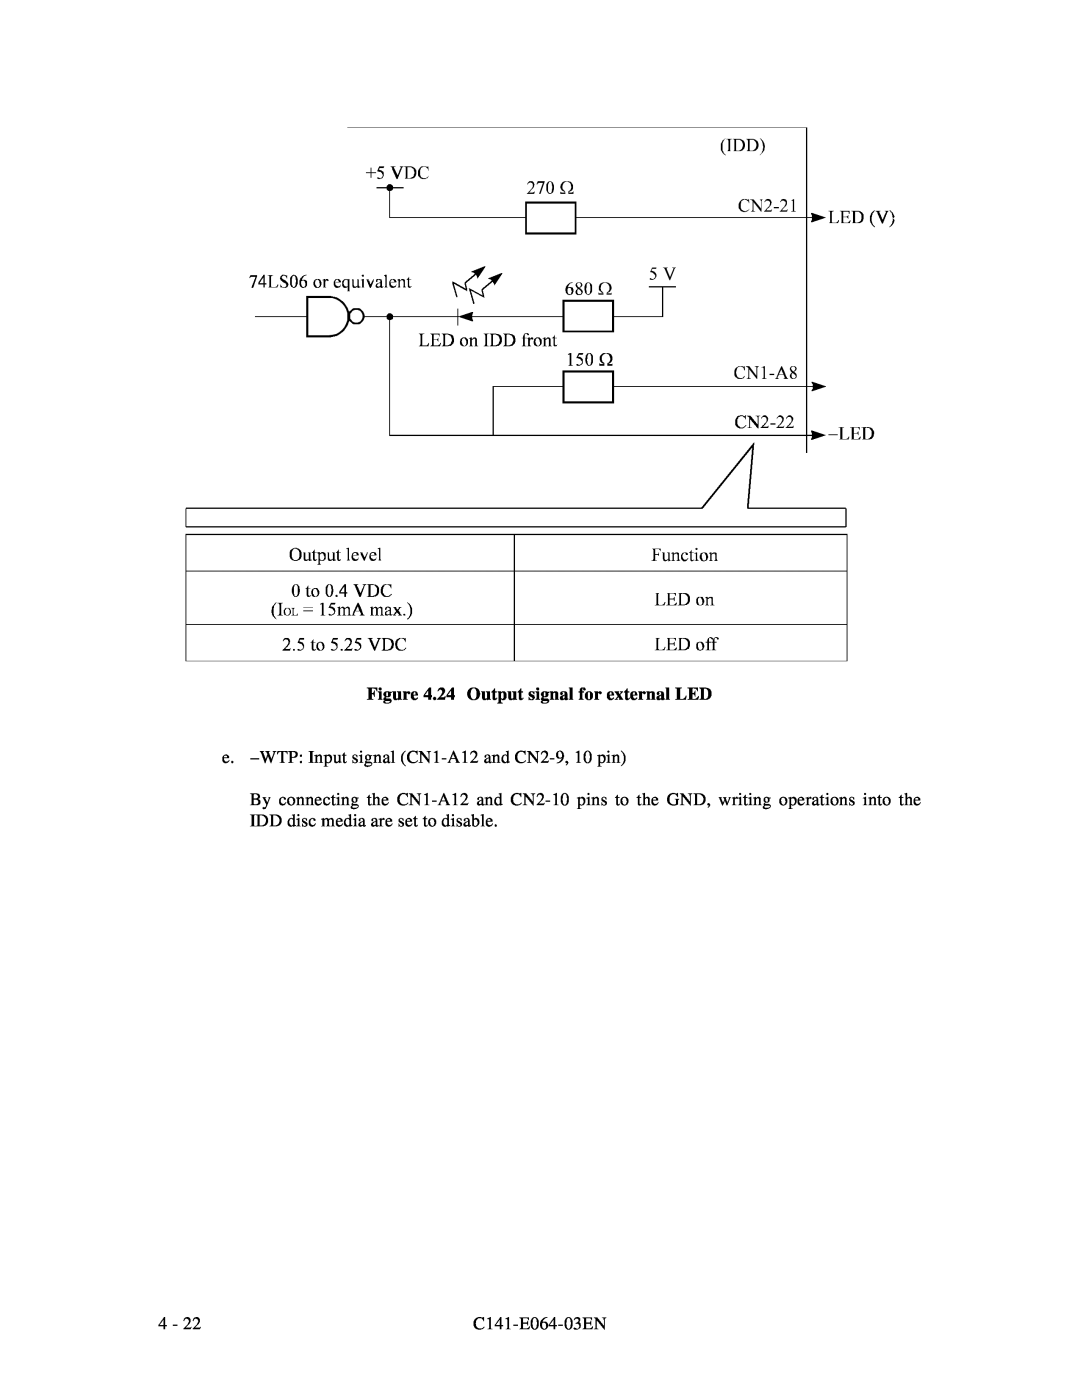 Fujitsu MAF3364LP manual 24 Output signal for external LED, e. -WTP Input signal CN1-A12 and CN2-9, 10 pin, C141-E064-03EN 